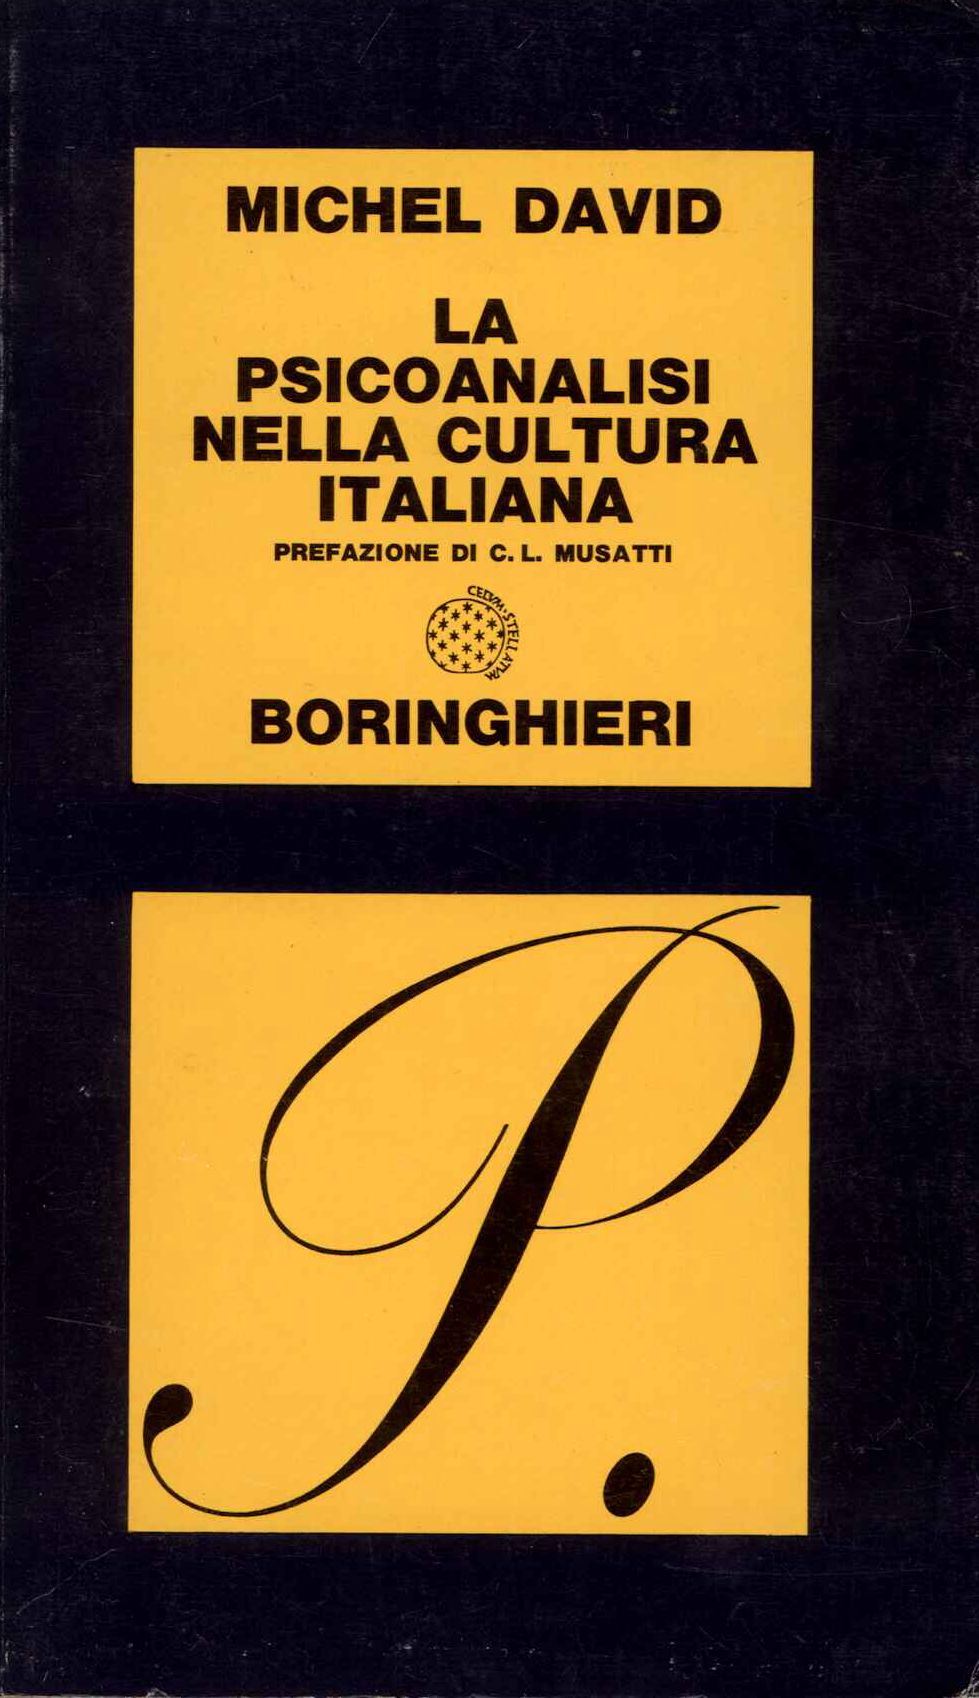 Psicoanalisi nella cultura italiana